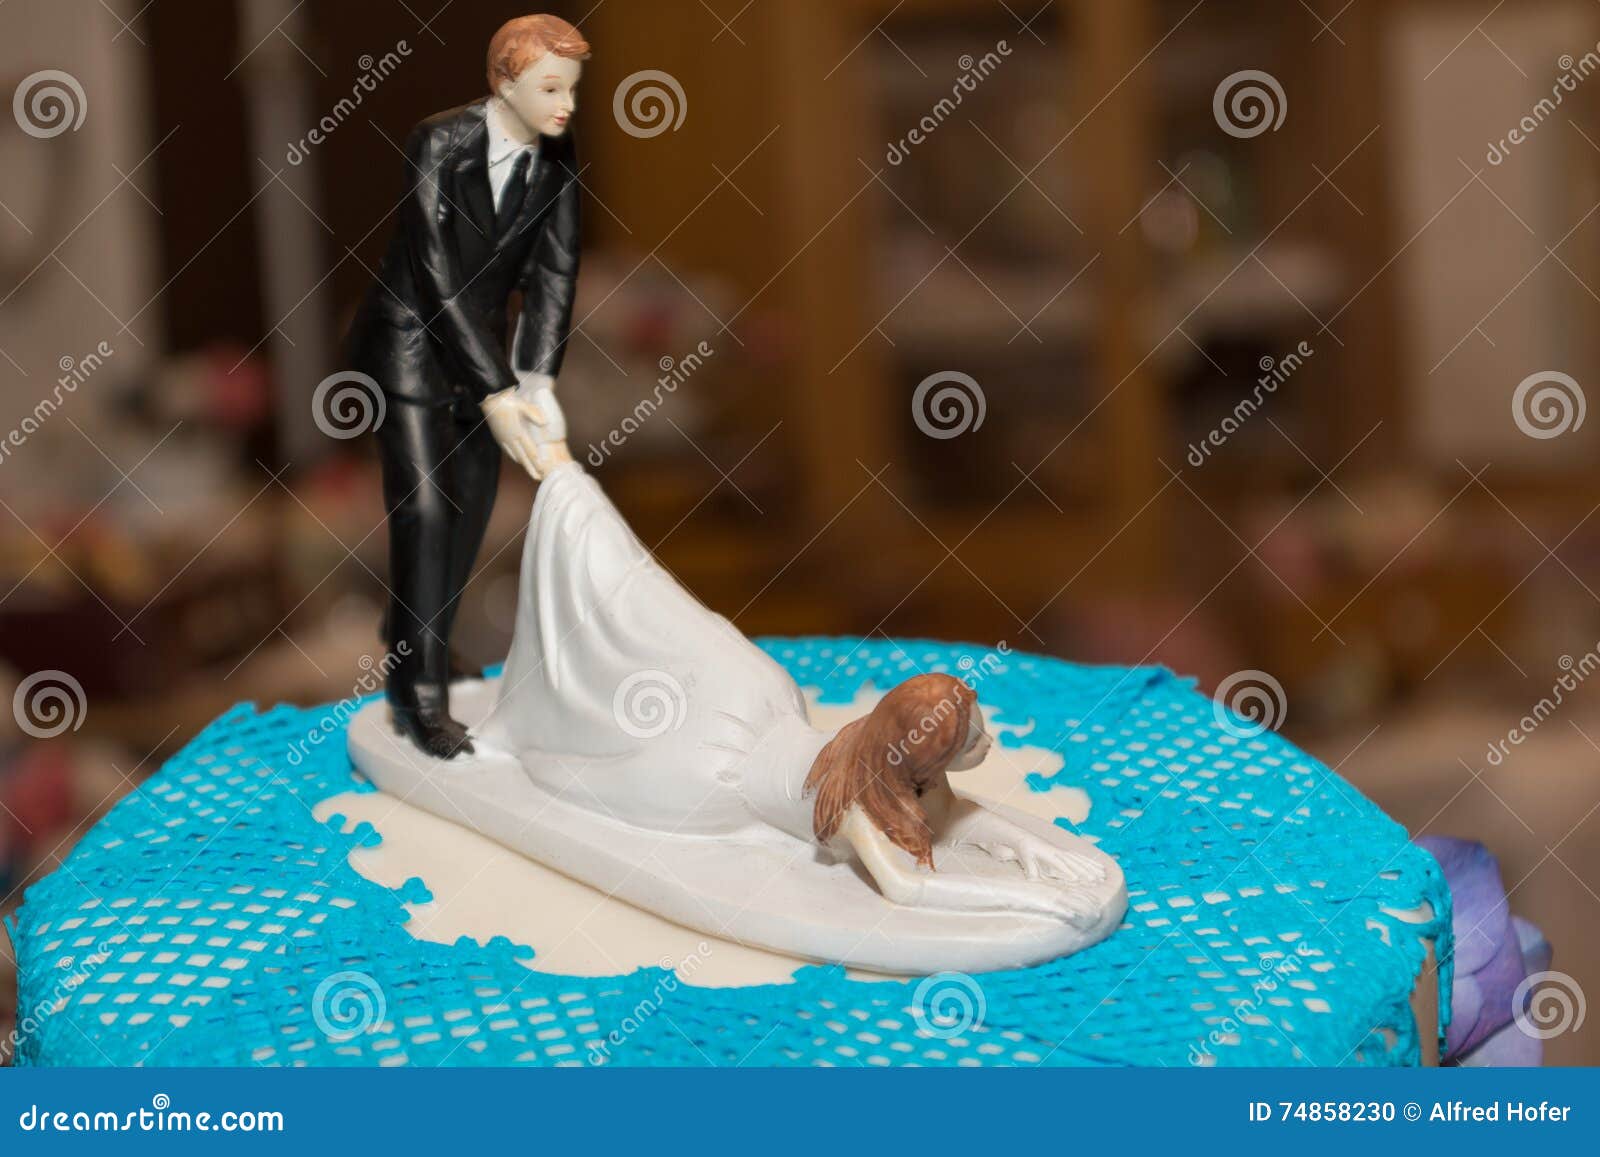 Funny Wedding Couple on Wedding Cake Stock Photo - Image of beauty ...